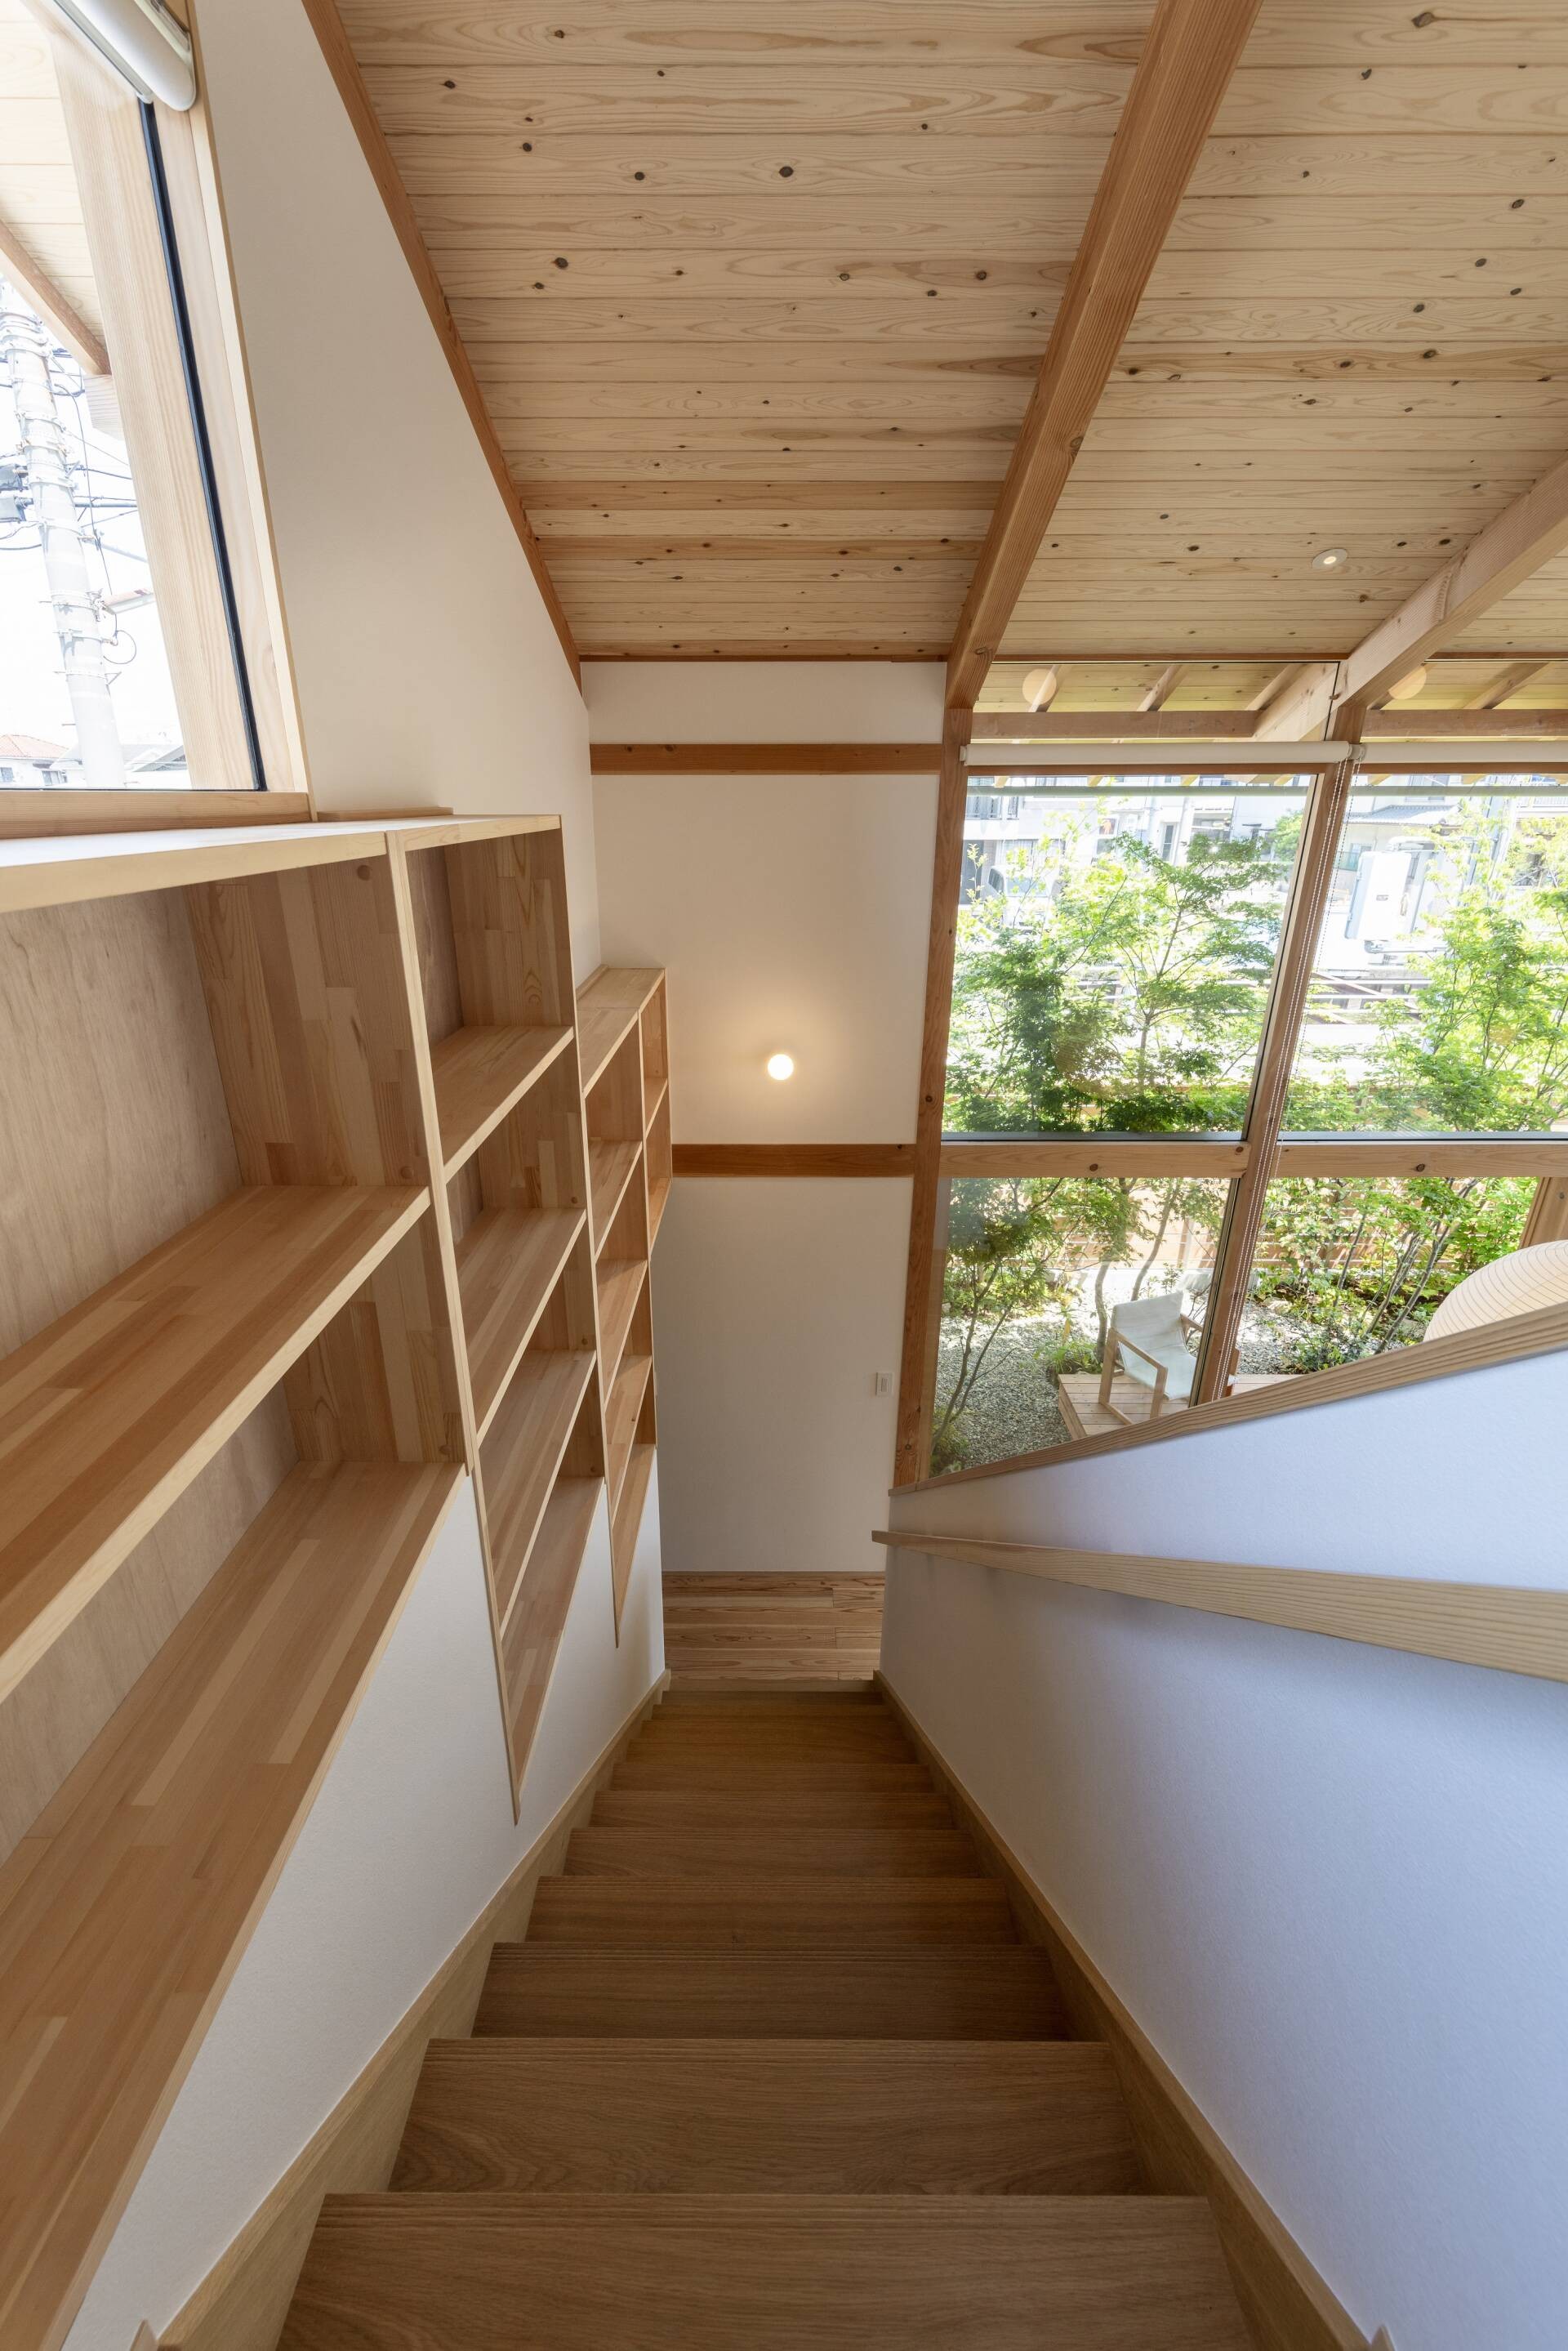 
Bên cạnh cầu thang là hệ tủ sát tường, giúp tăng diện tích và hiệu quả lưu trữ cho không gian sống
